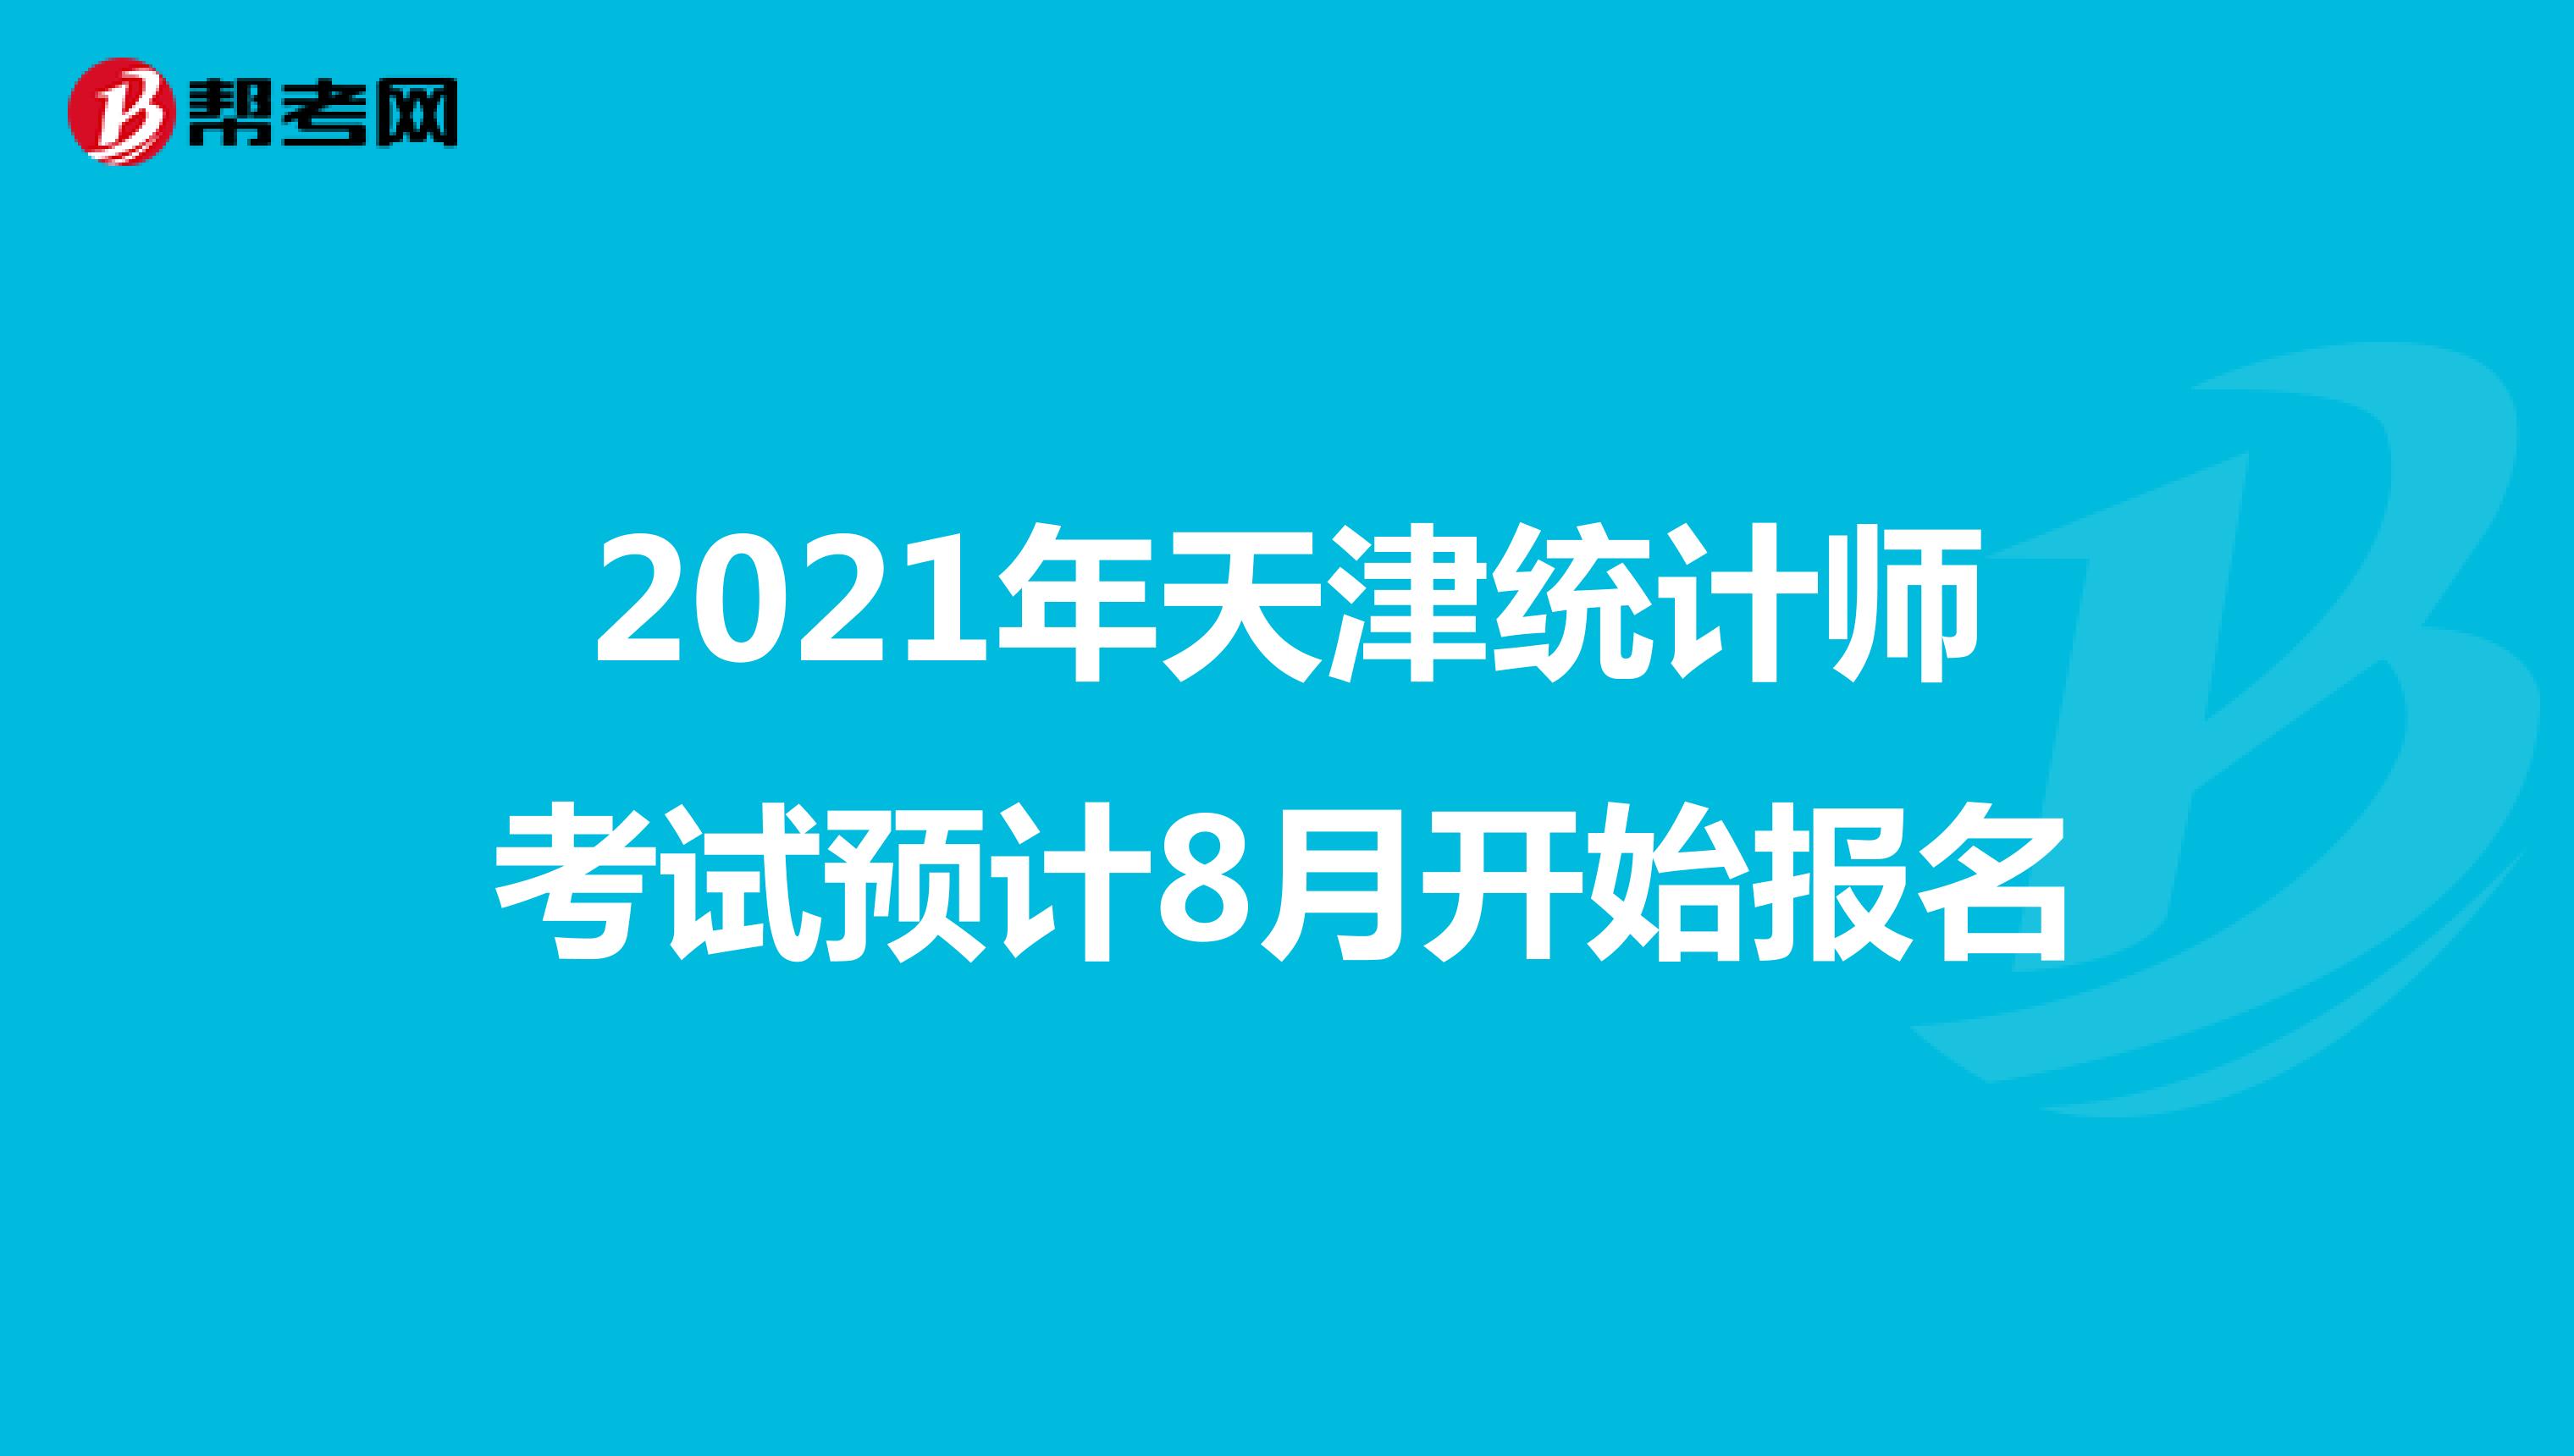 2021年天津统计师考试预计8月开始报名